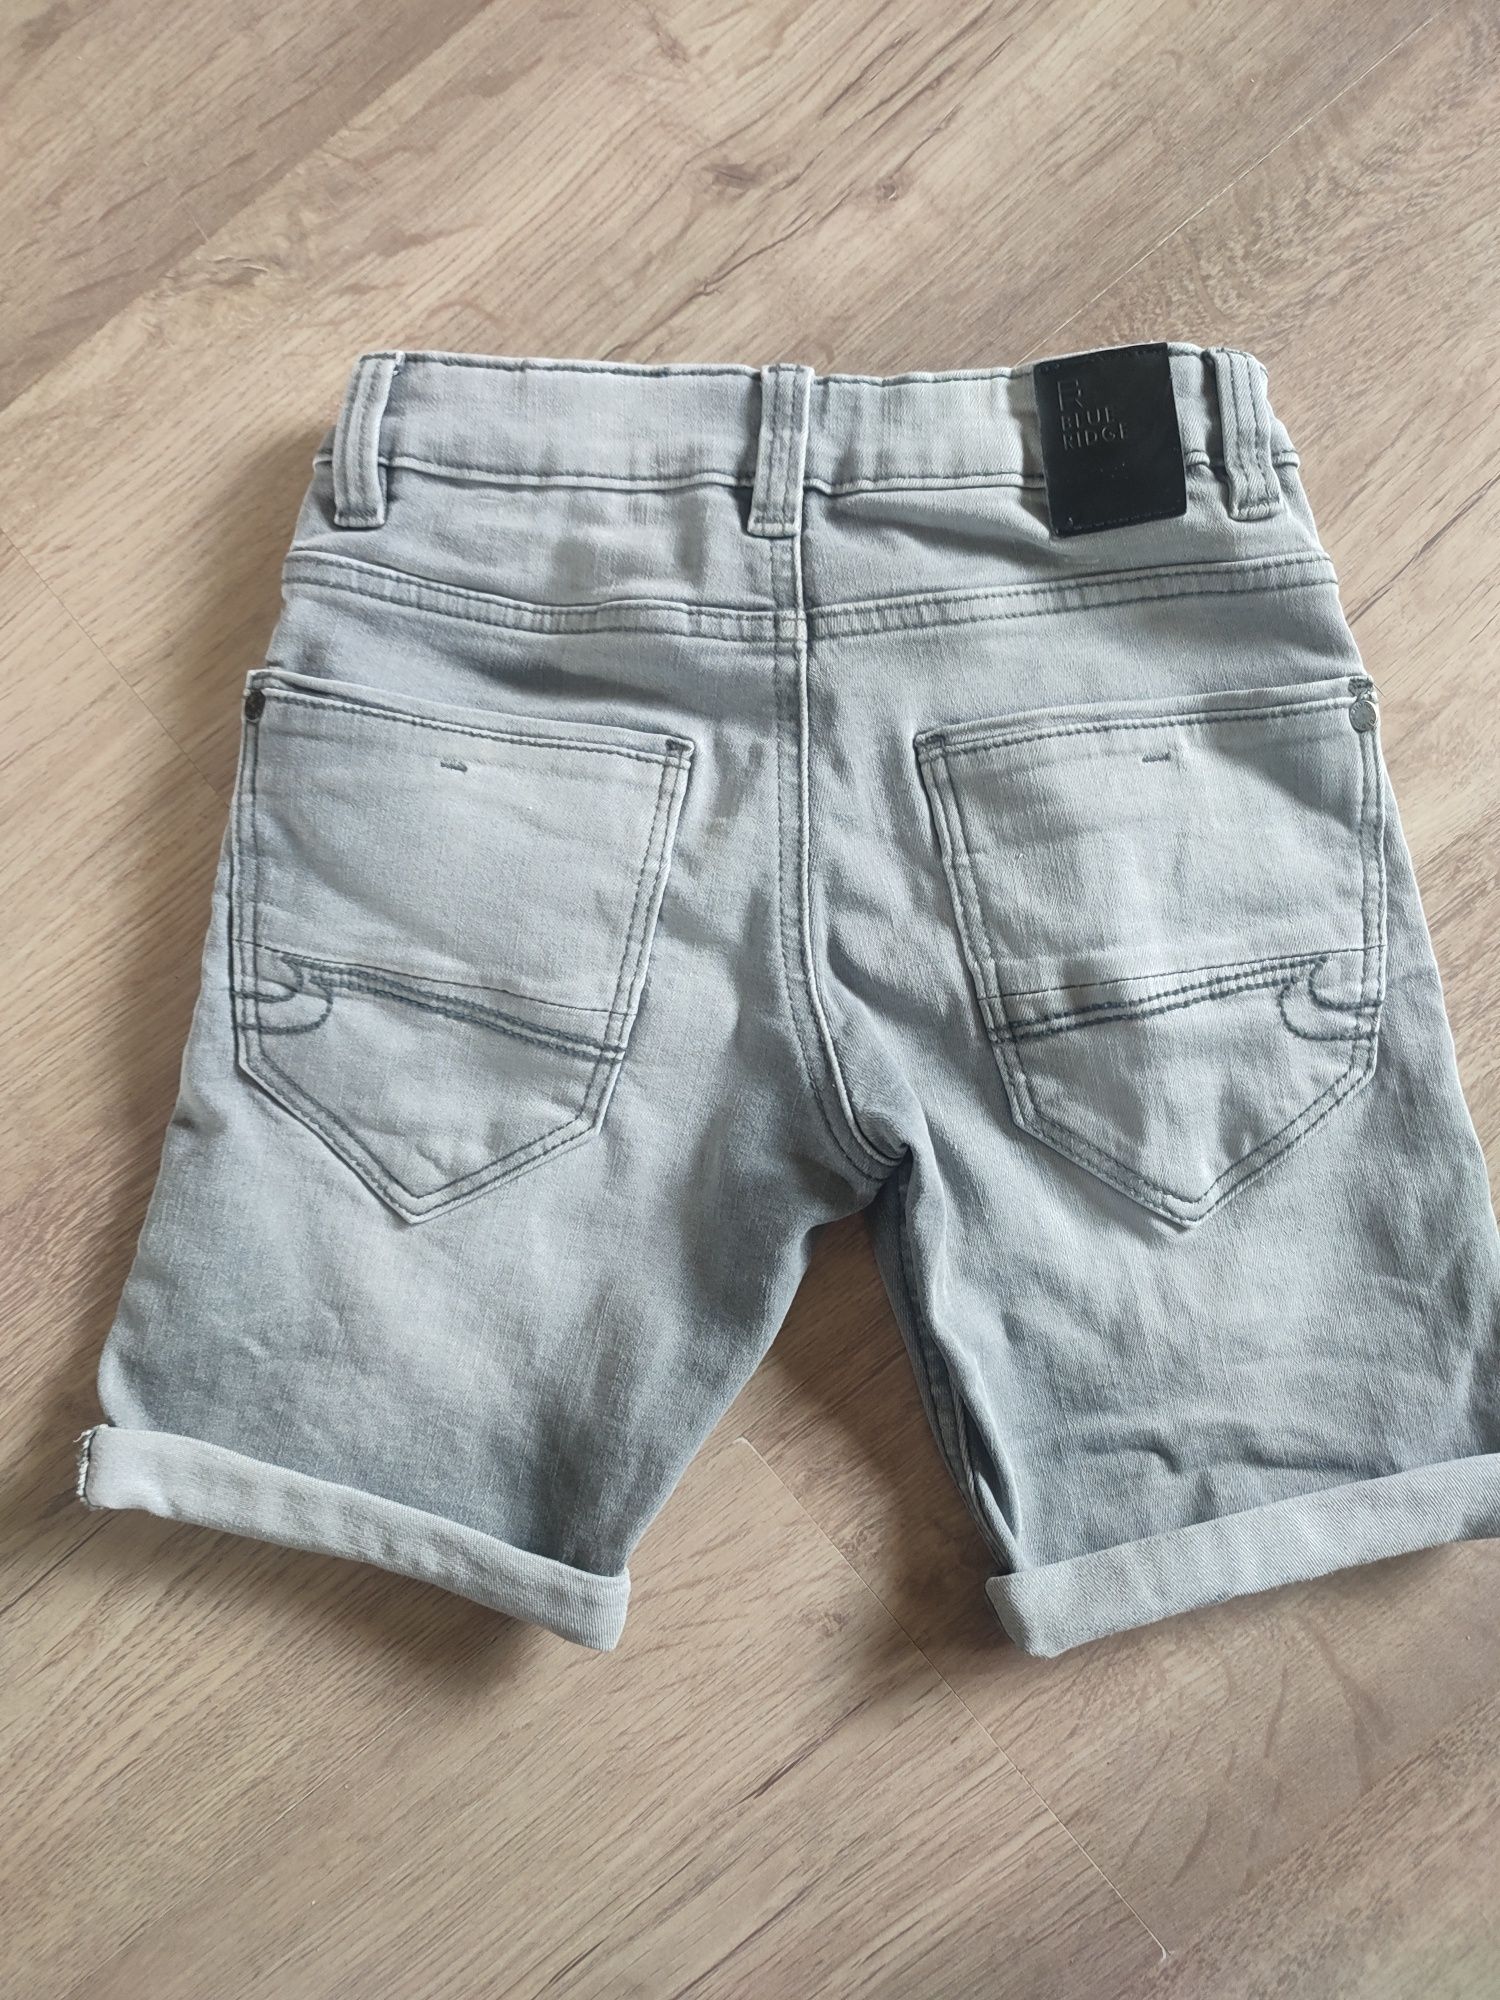 krótkie spodenki jeansowe dla chłopca rozmiar 116 siwr